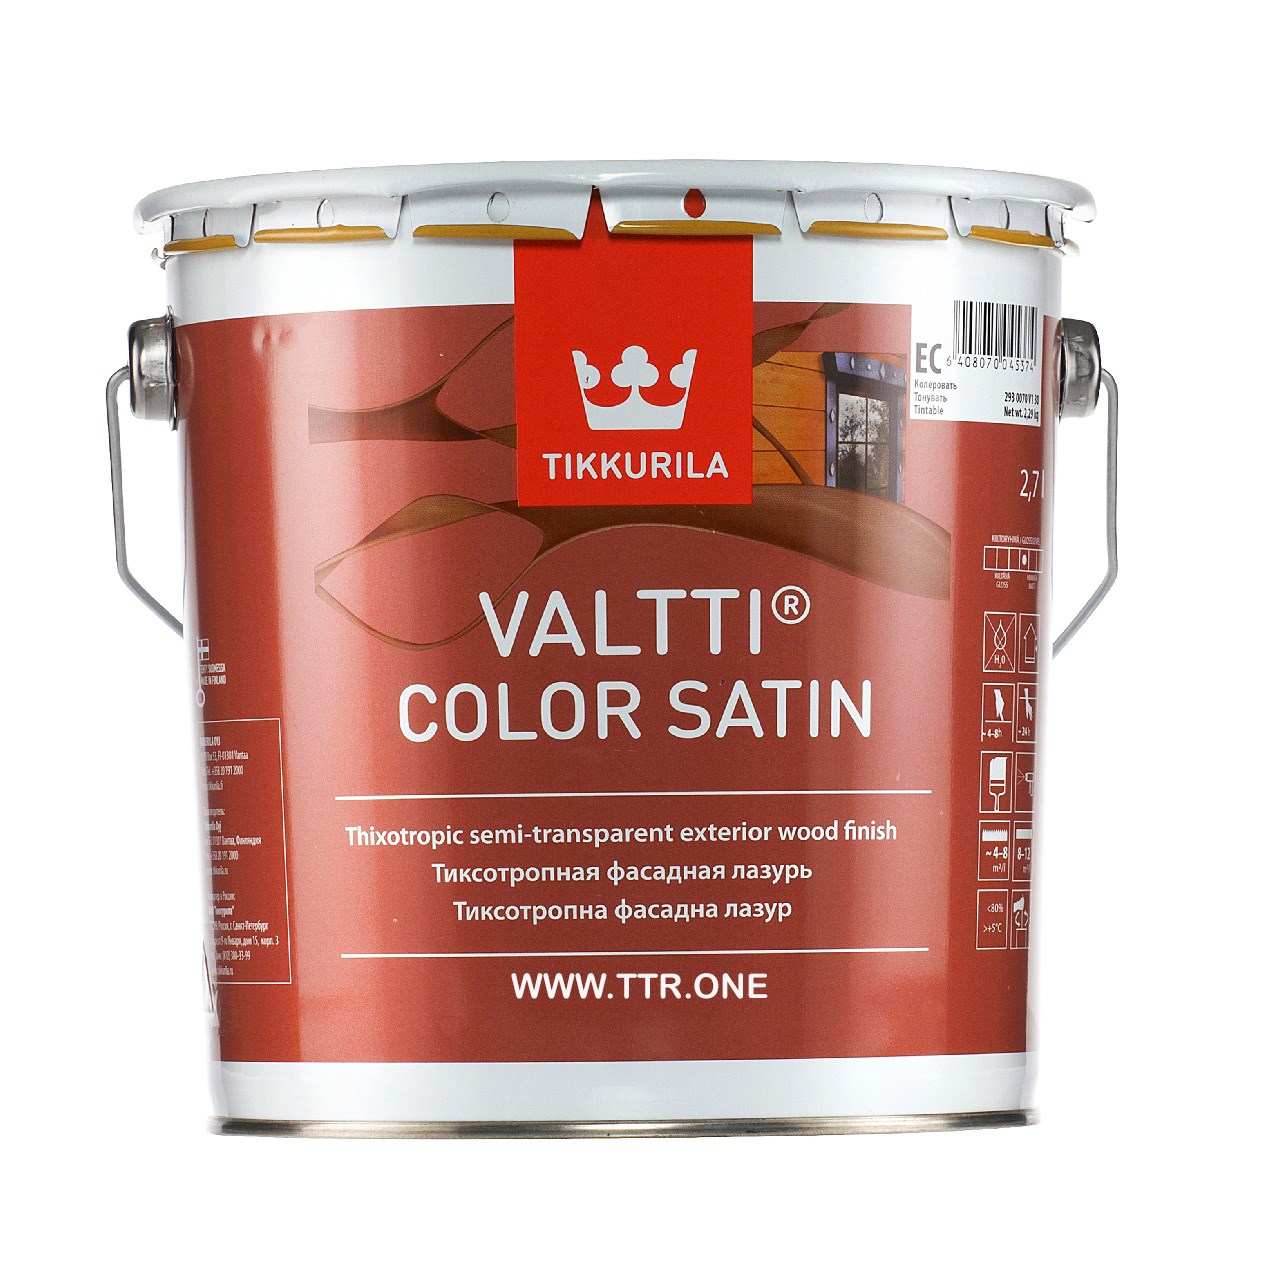 رنگ پایه روغن تیکوریلا مدل Valtti Color Satin 5063 حجم 3 لیتر